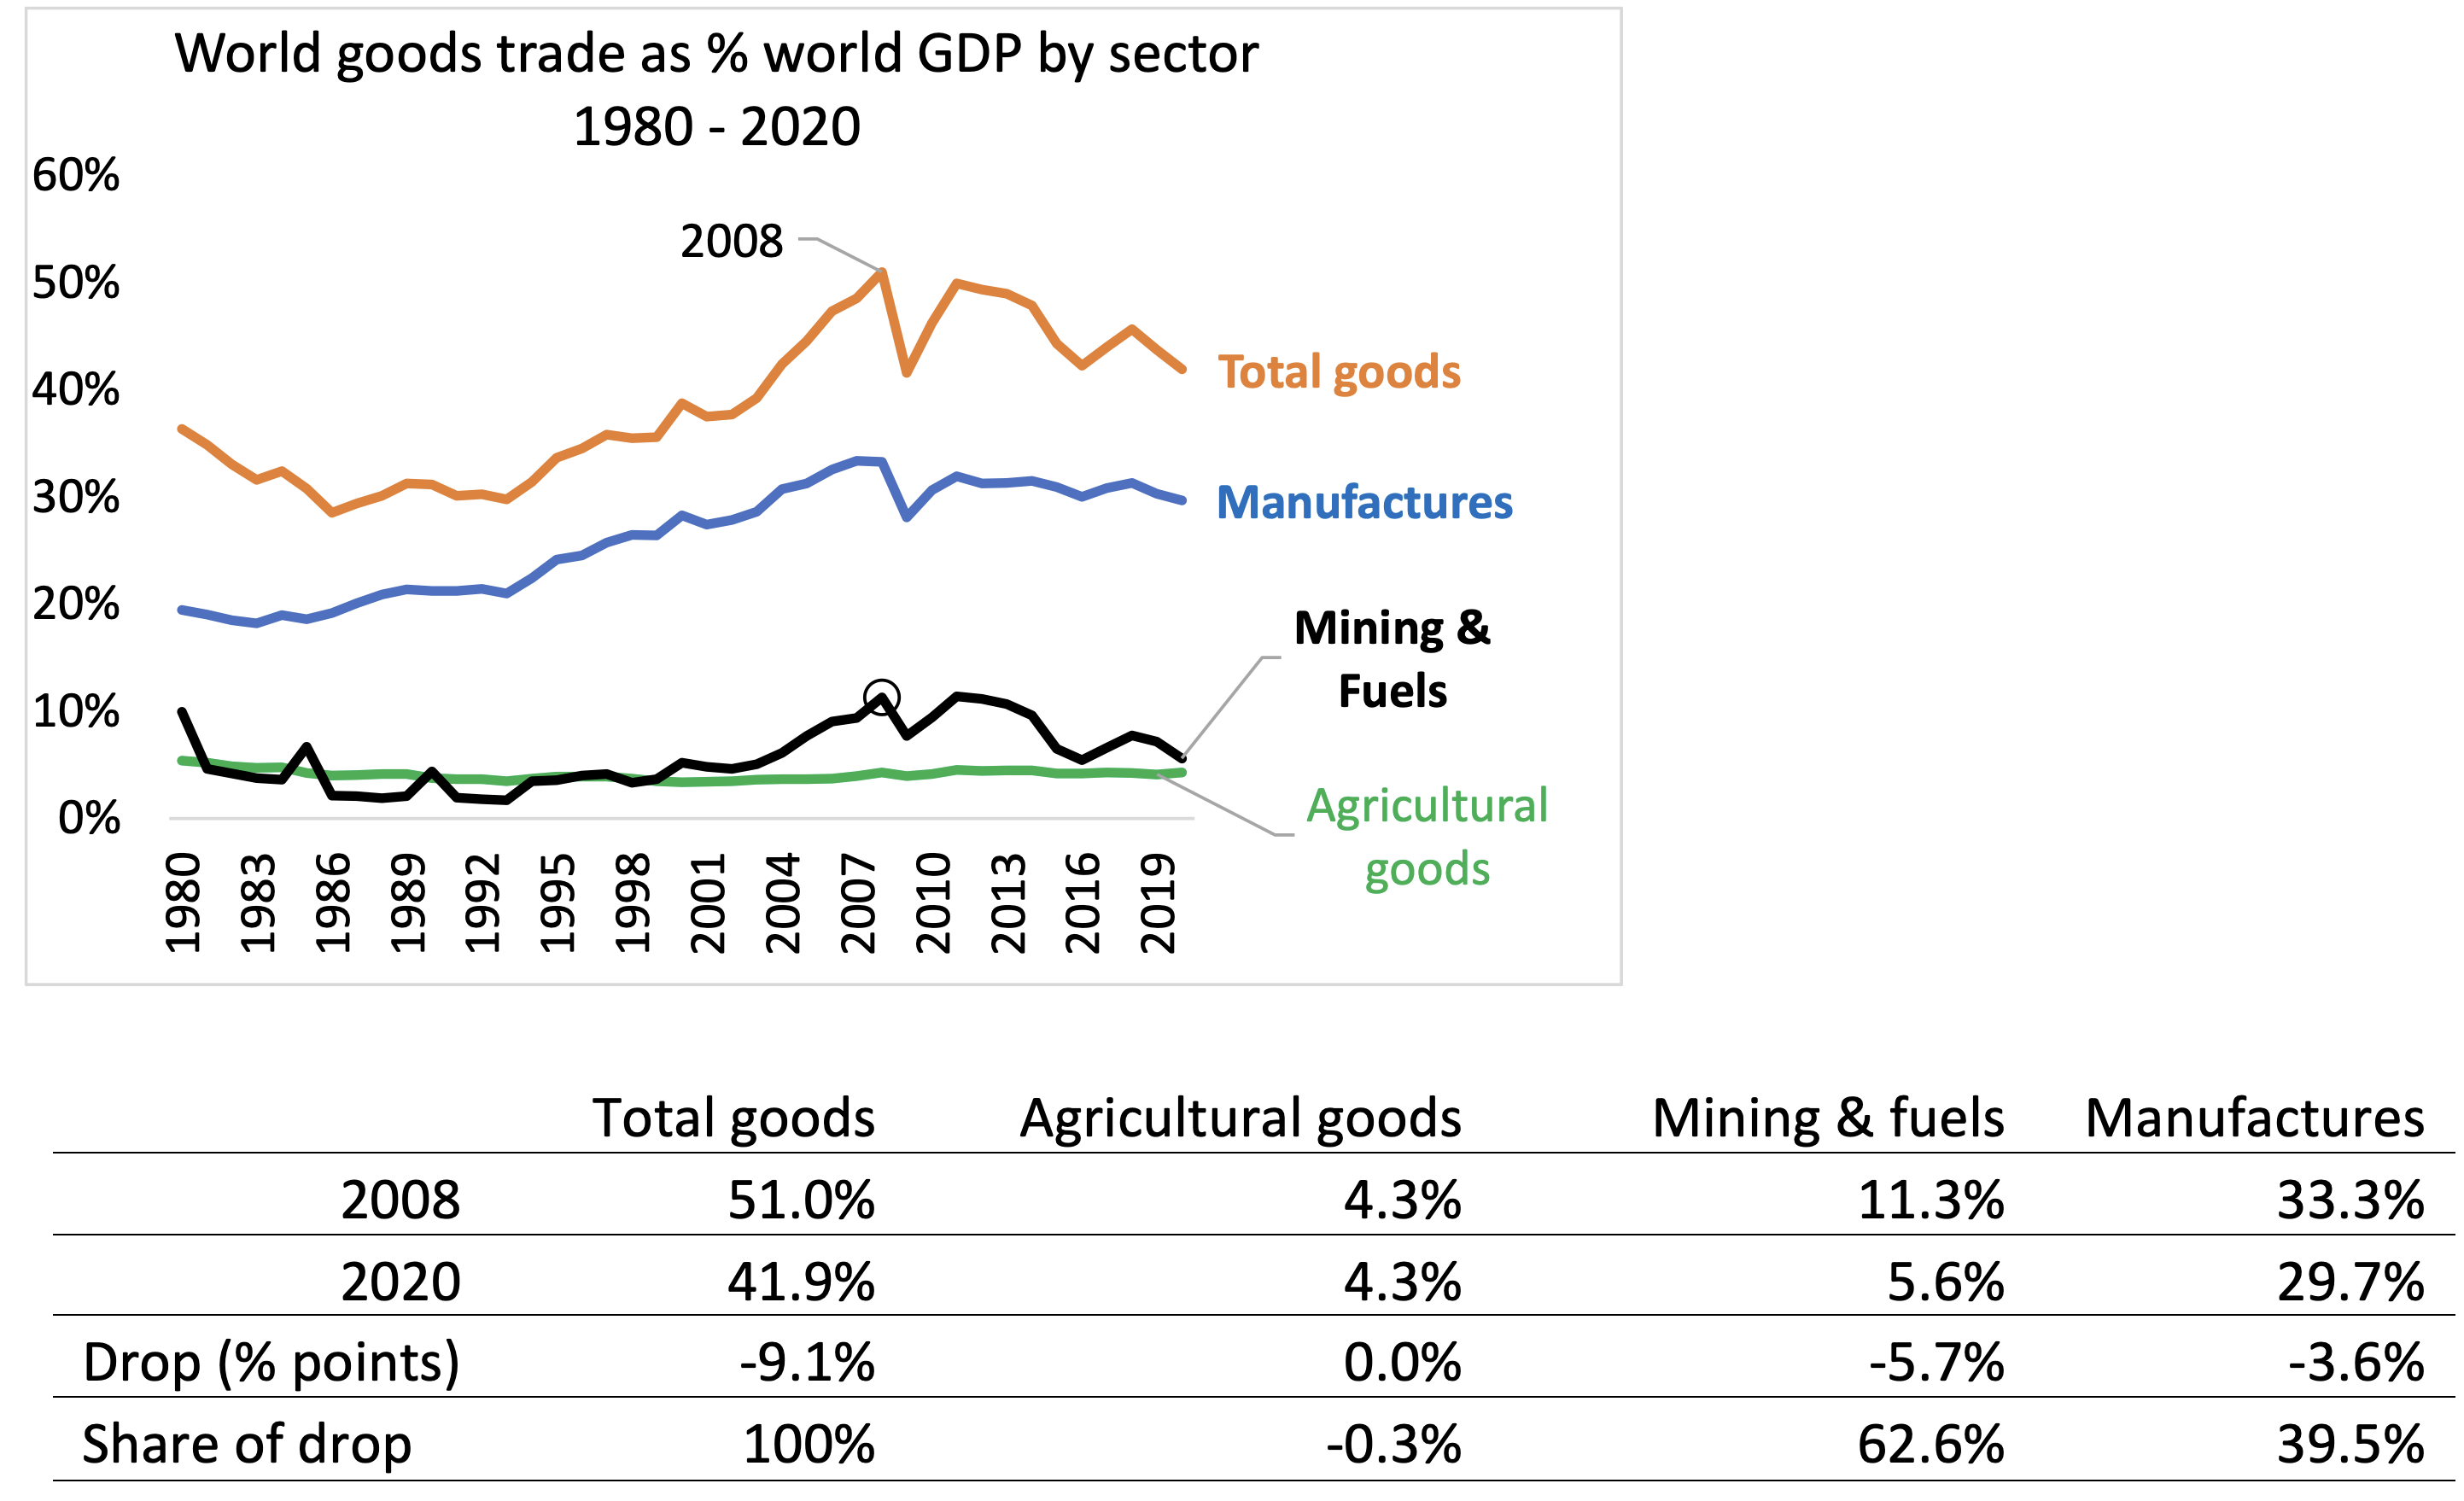 图1按部门划分的世界货物贸易占世界GDP的比例